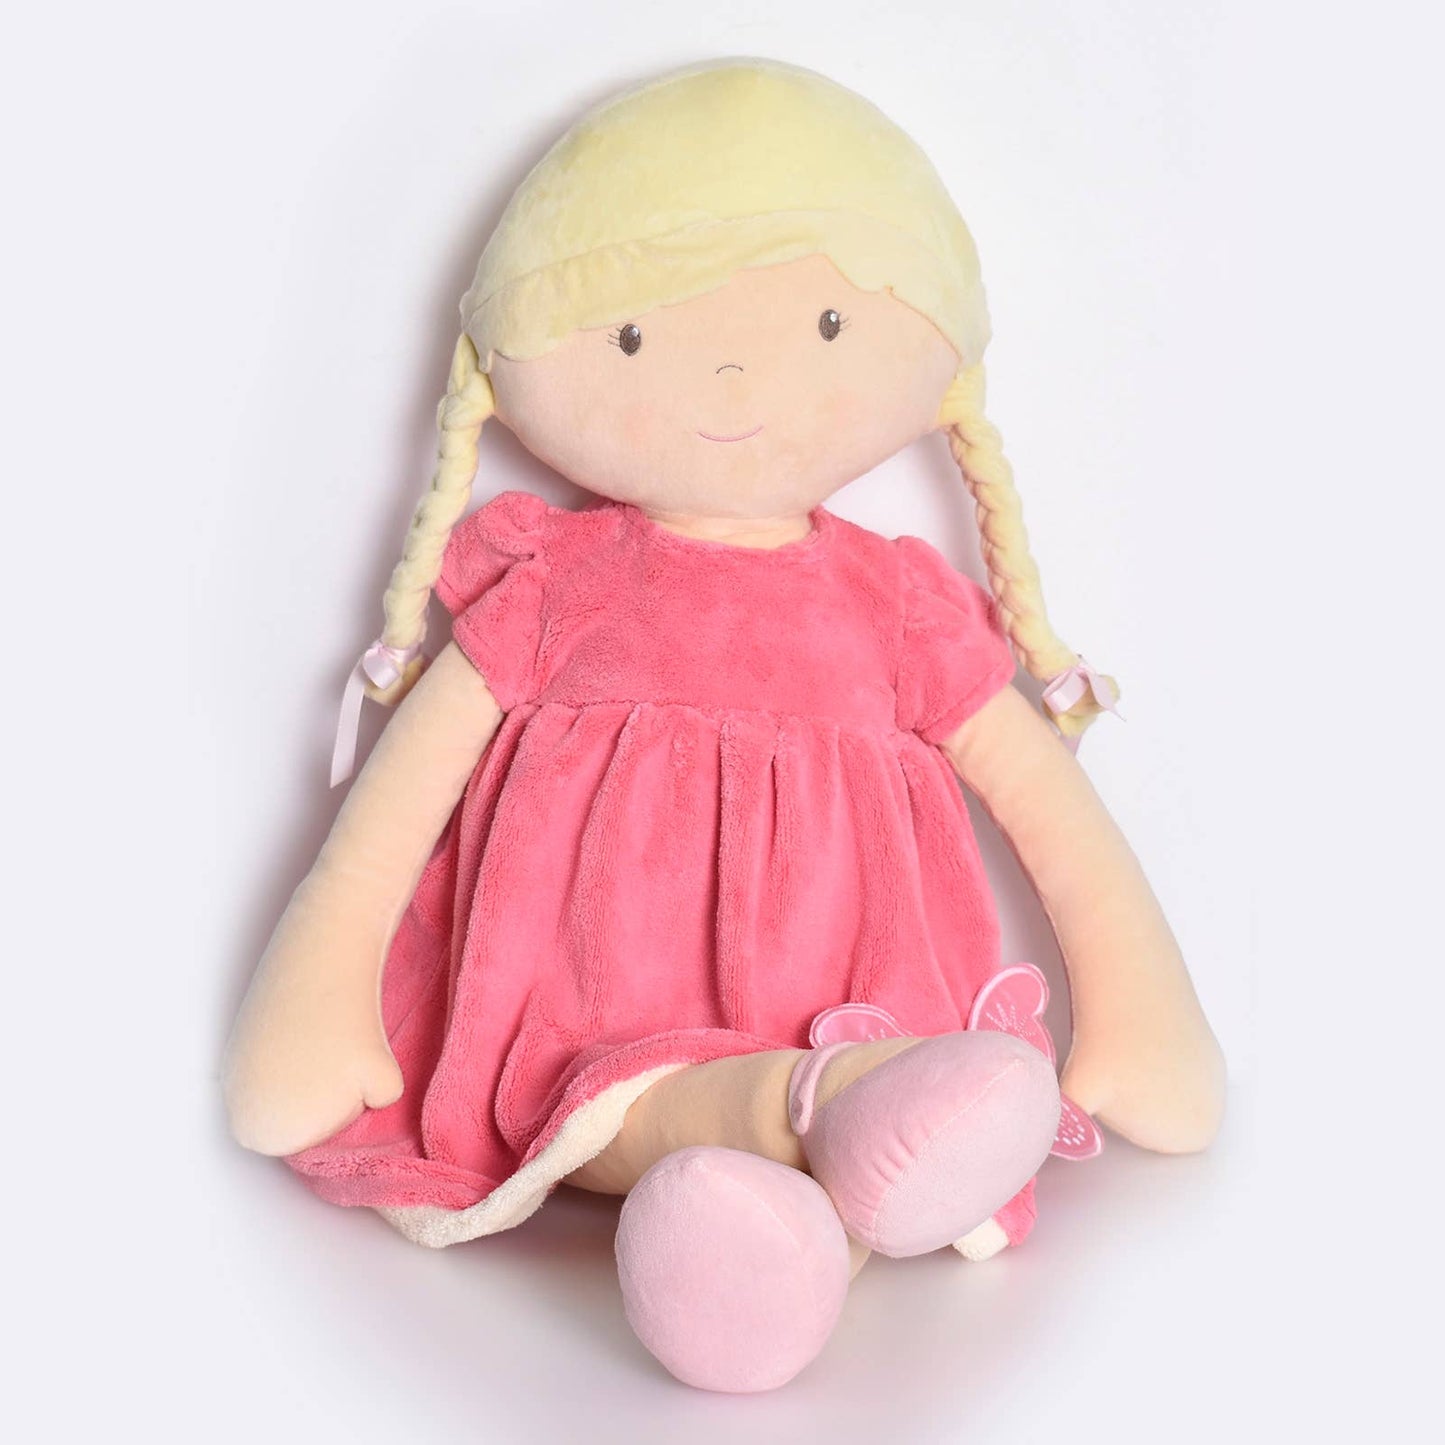 Ria Display Blonde Hair with Pink & White Dress Gifts Tikiri Toys LLC   